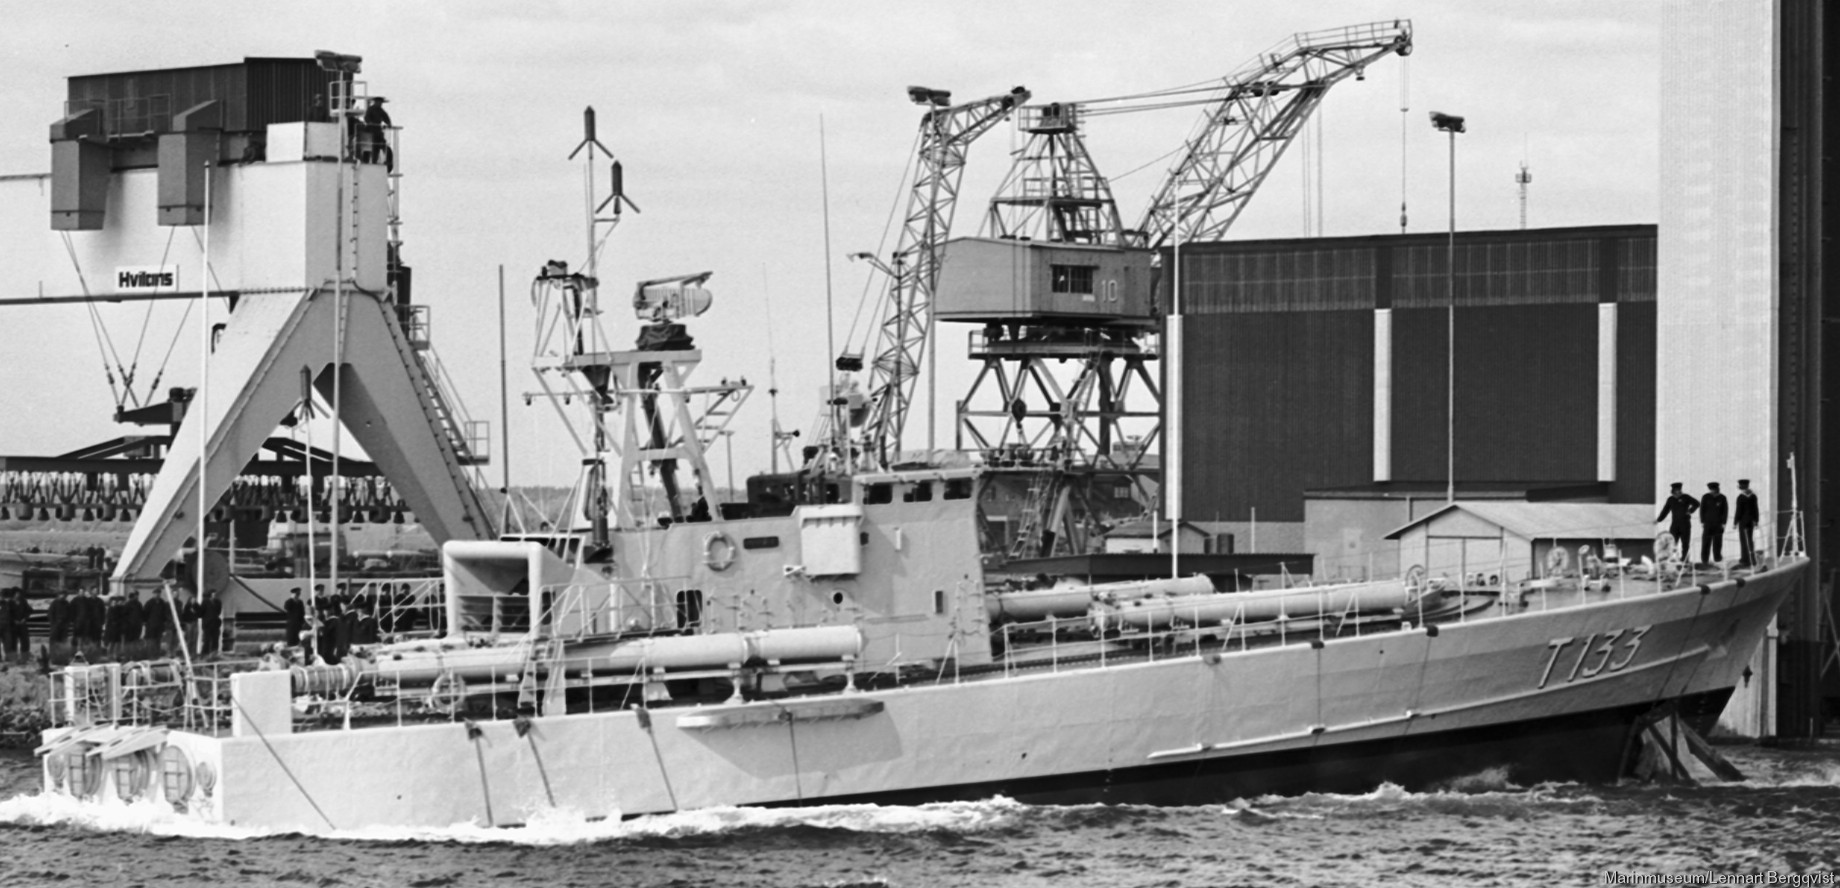 t133 norrtälje hswms hms norrköping class fast attack craft torpedo missile patrol boat swedish navy svenska marinen 05